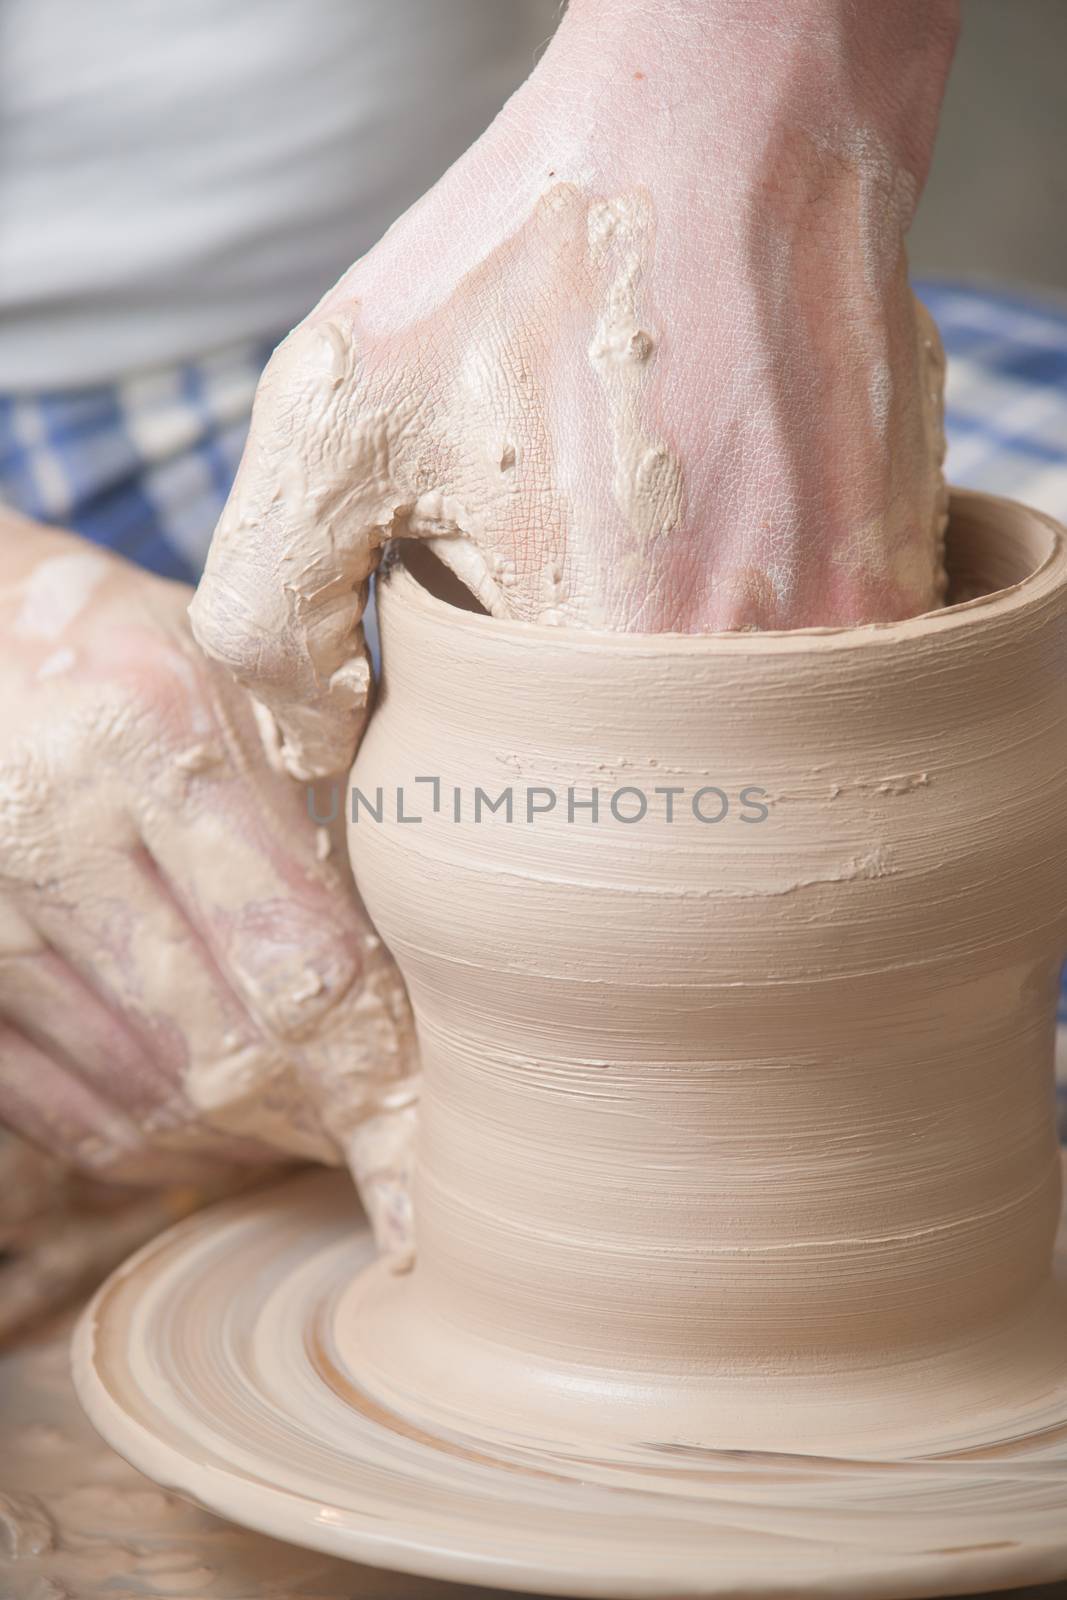 Hands of a potter by kozak